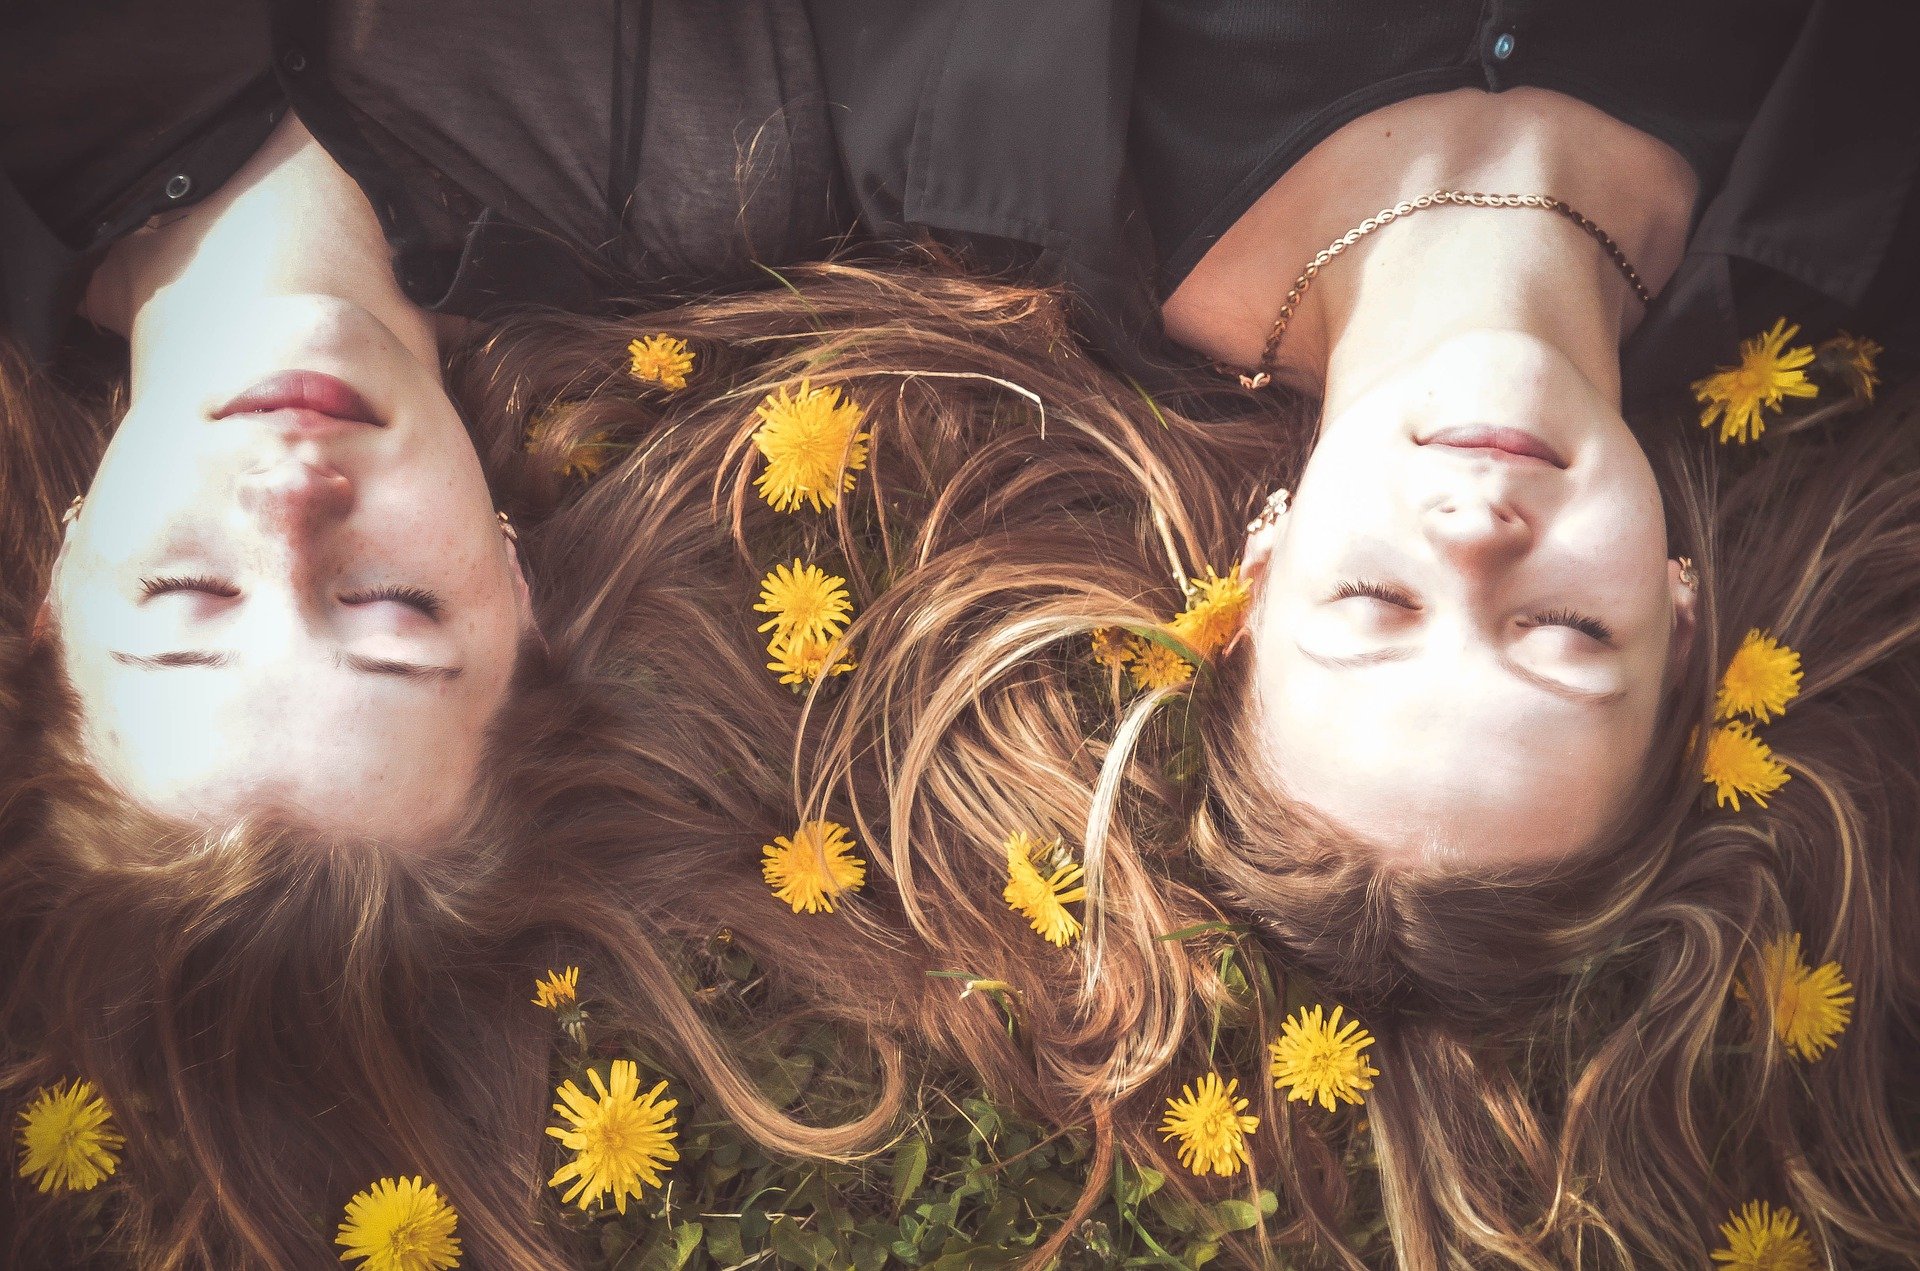 Mulheres deitadas em campo com os olhos fechados com flores no cabelo